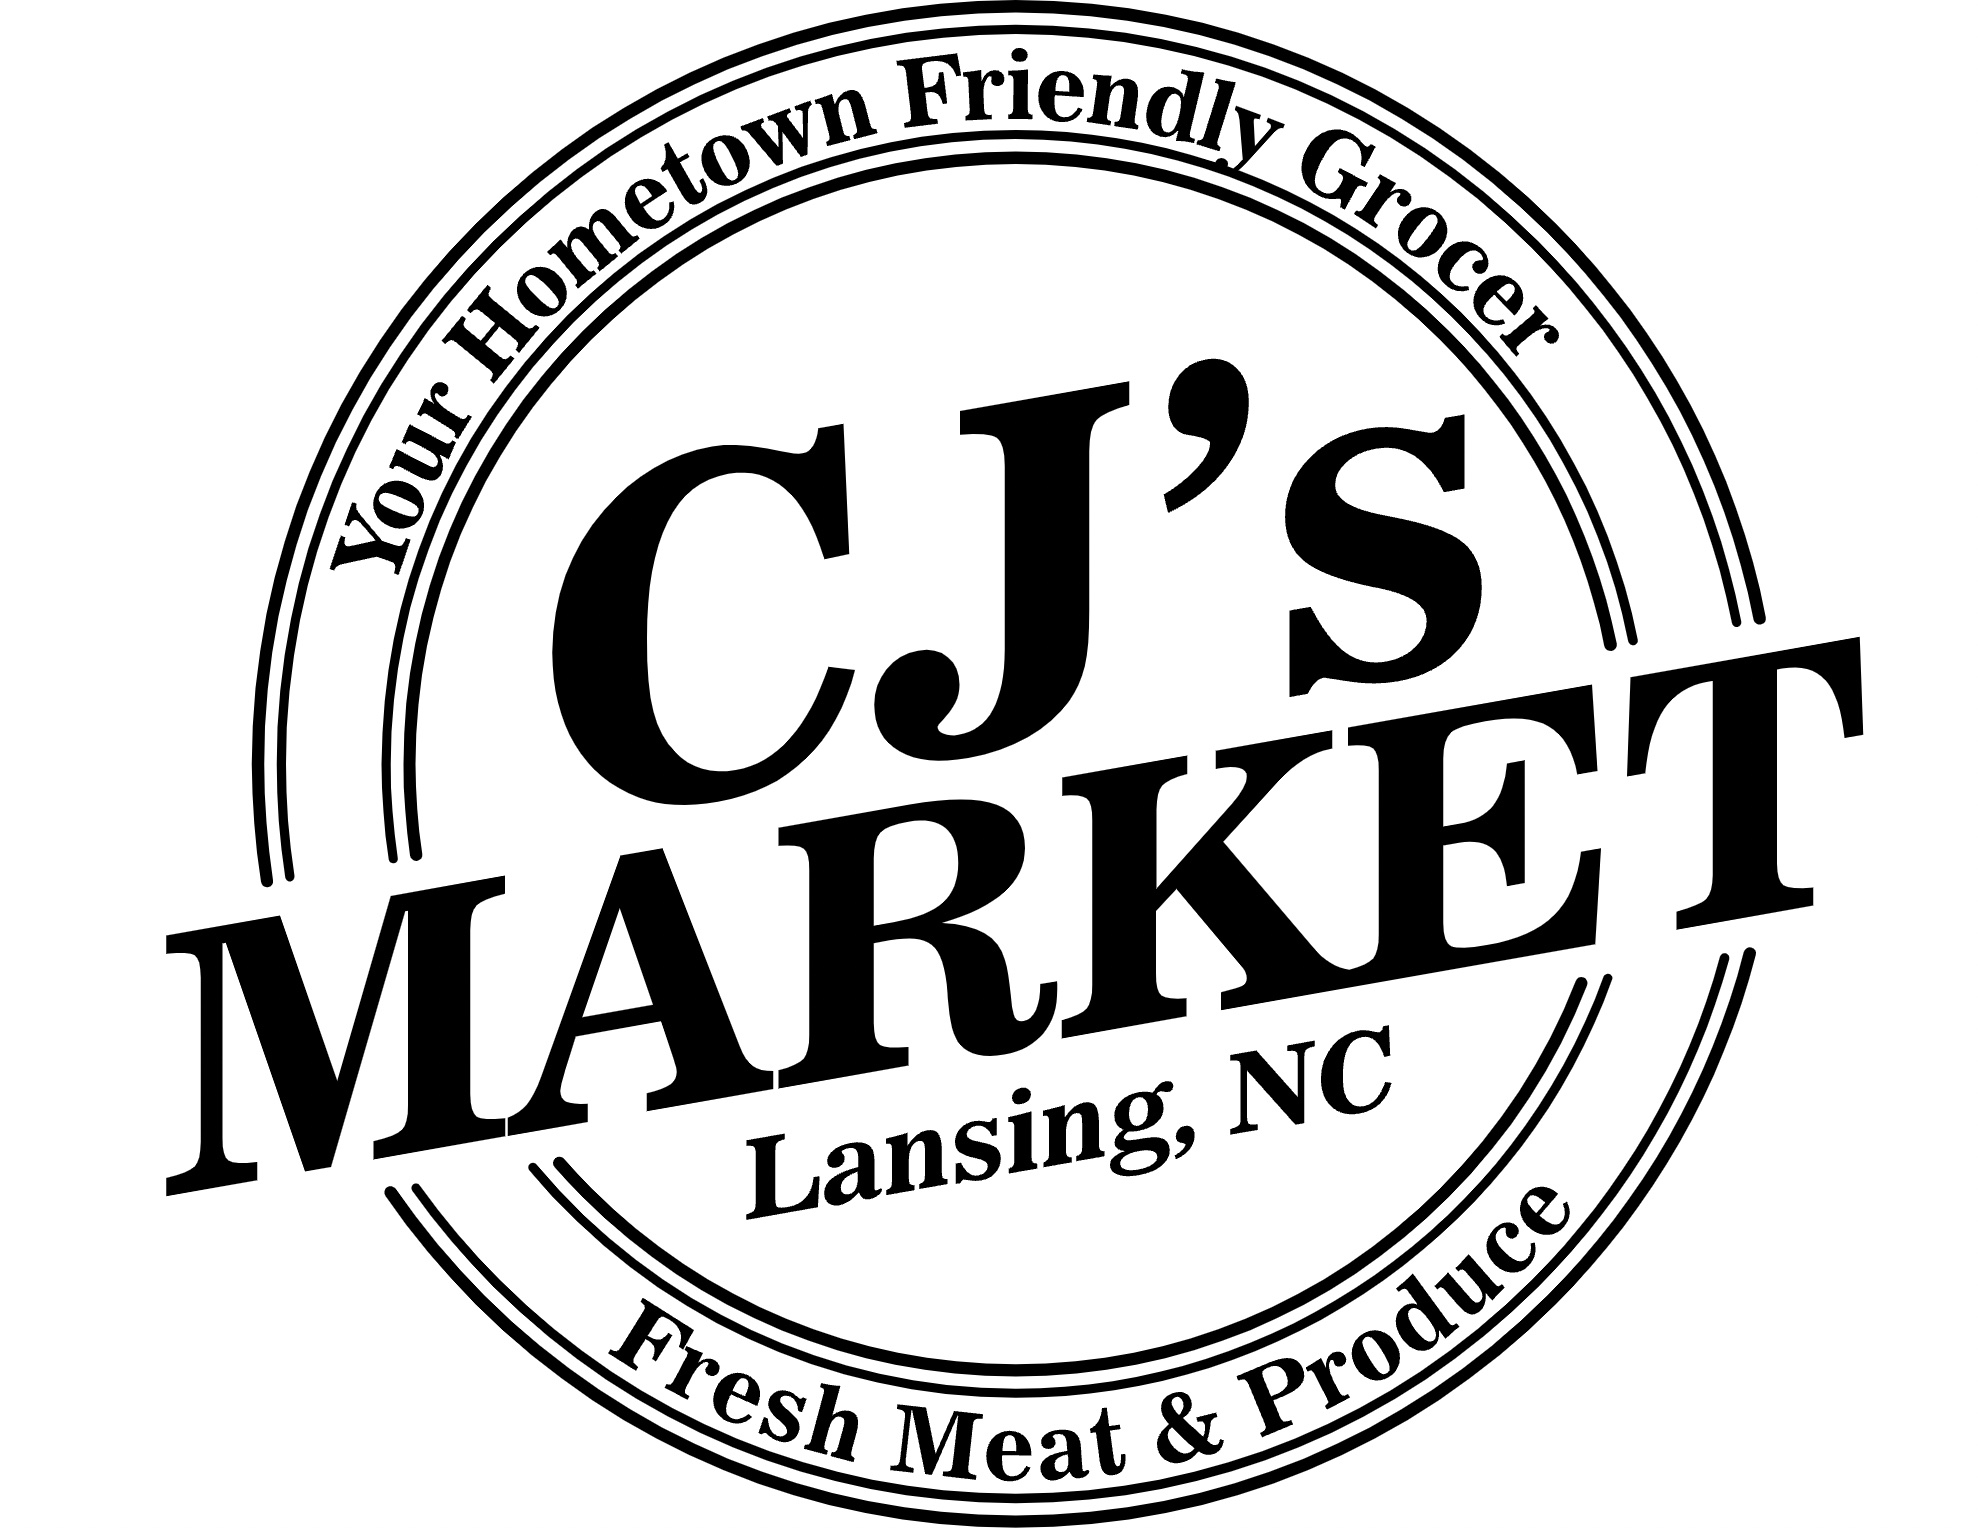 Sponsor CJ's Market